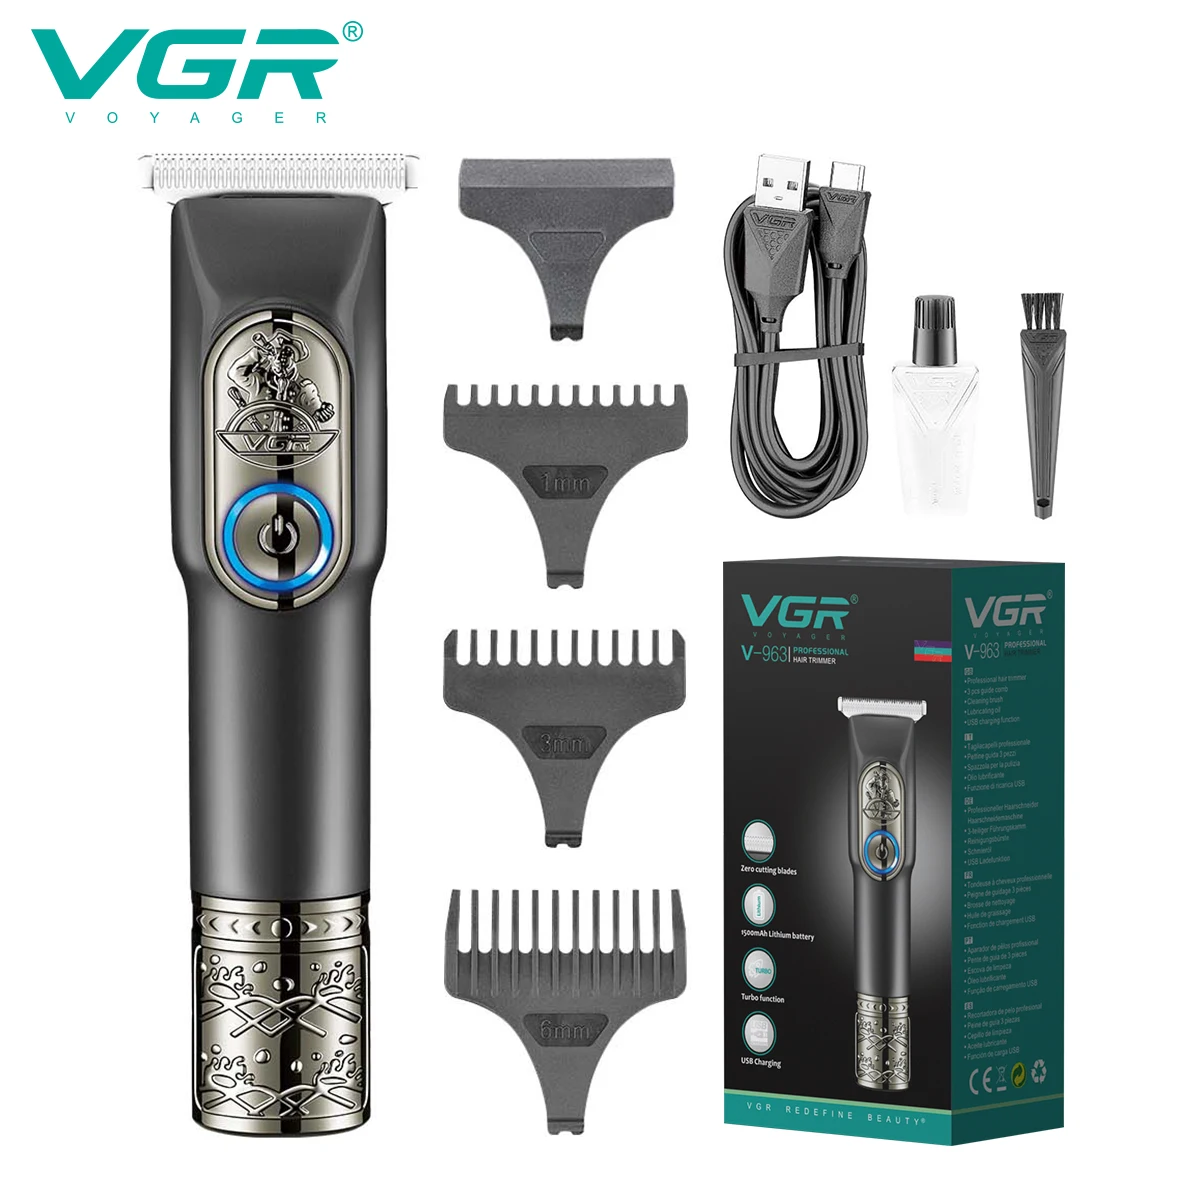 

VGR машинка для стрижки машинка для стрижки волос Триммер для волос Перезаряжаемый Парикмахерская Профессиональный машинка для стрижки волос беспроводной Машинка для стрижки волос Кромкорез Триммер для мужчин V-963